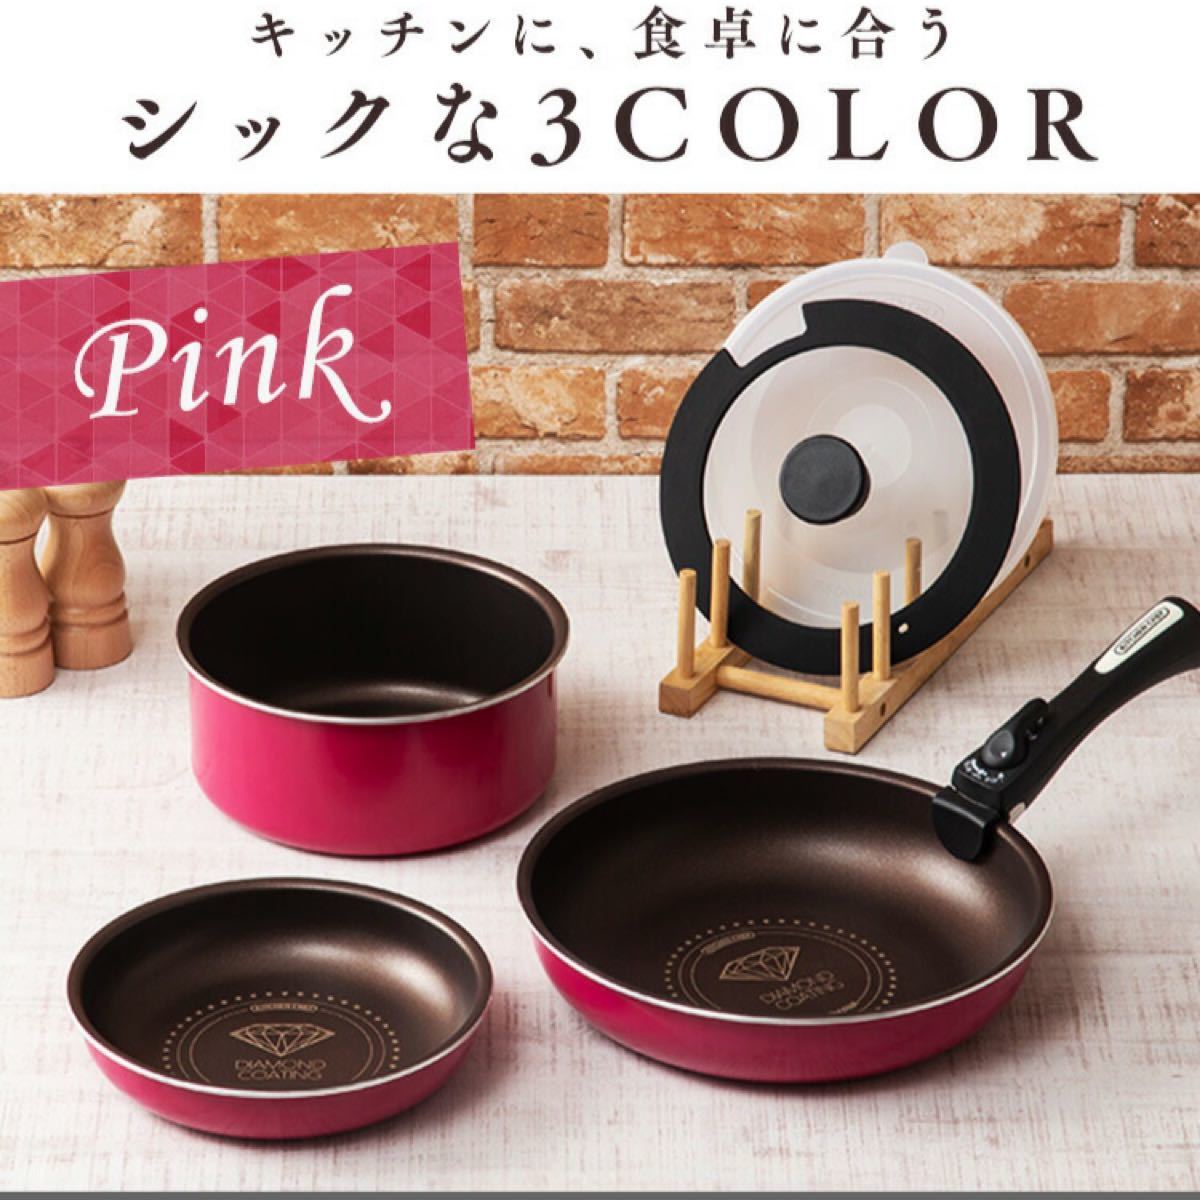 【新品】アイリスオーヤマ ダイヤモンドコートパン6点セット ピンク